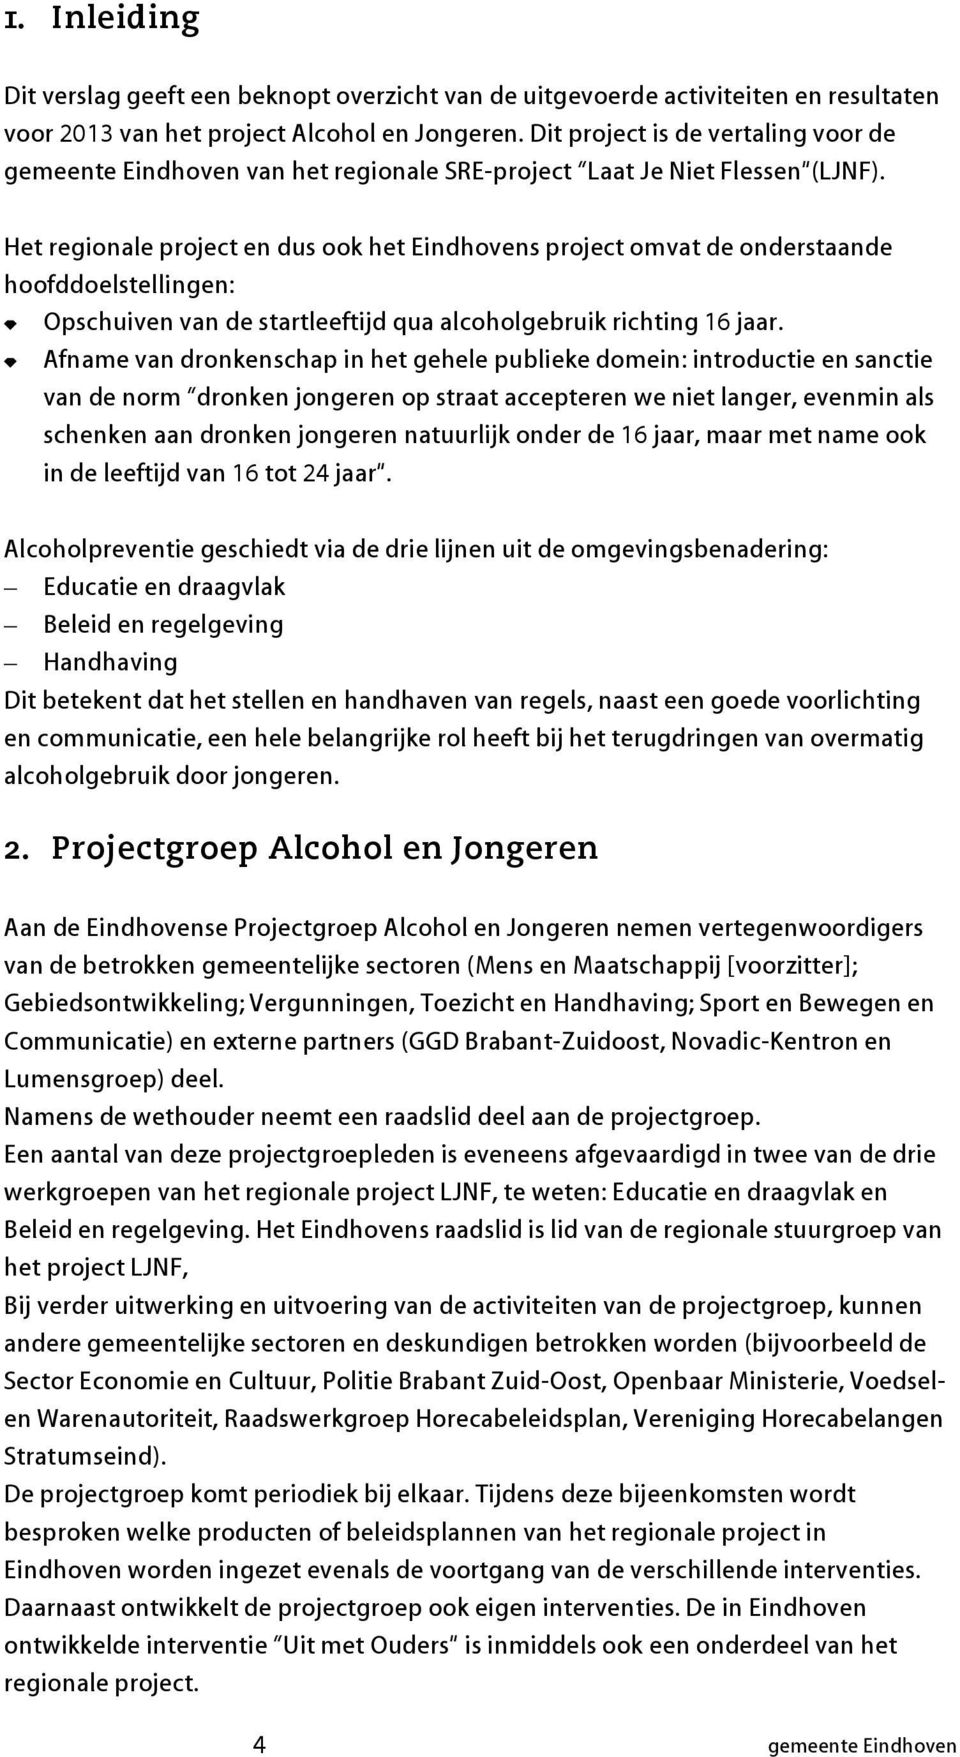 Het regionale project en dus ook het Eindhovens project omvat de onderstaande hoofddoelstellingen: Opschuiven van de startleeftijd qua alcoholgeruik richting 16 jaar.